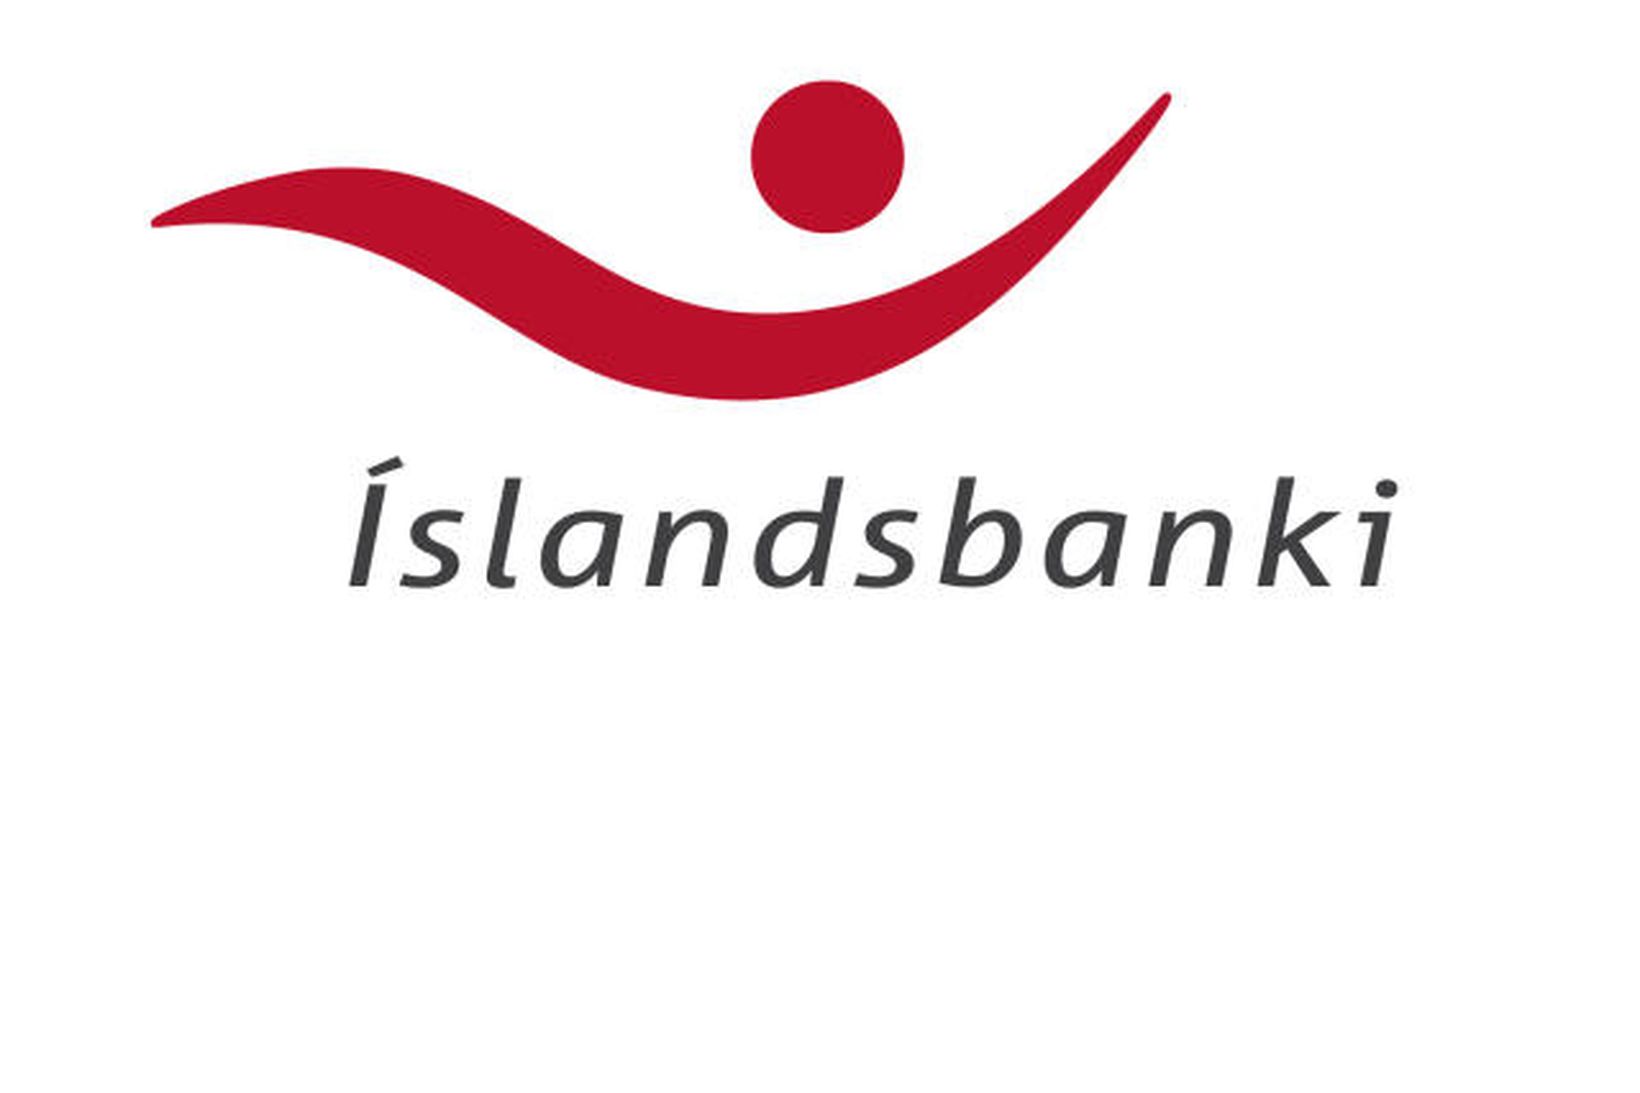 Banki fjórmenninganna var Íslandsbanki